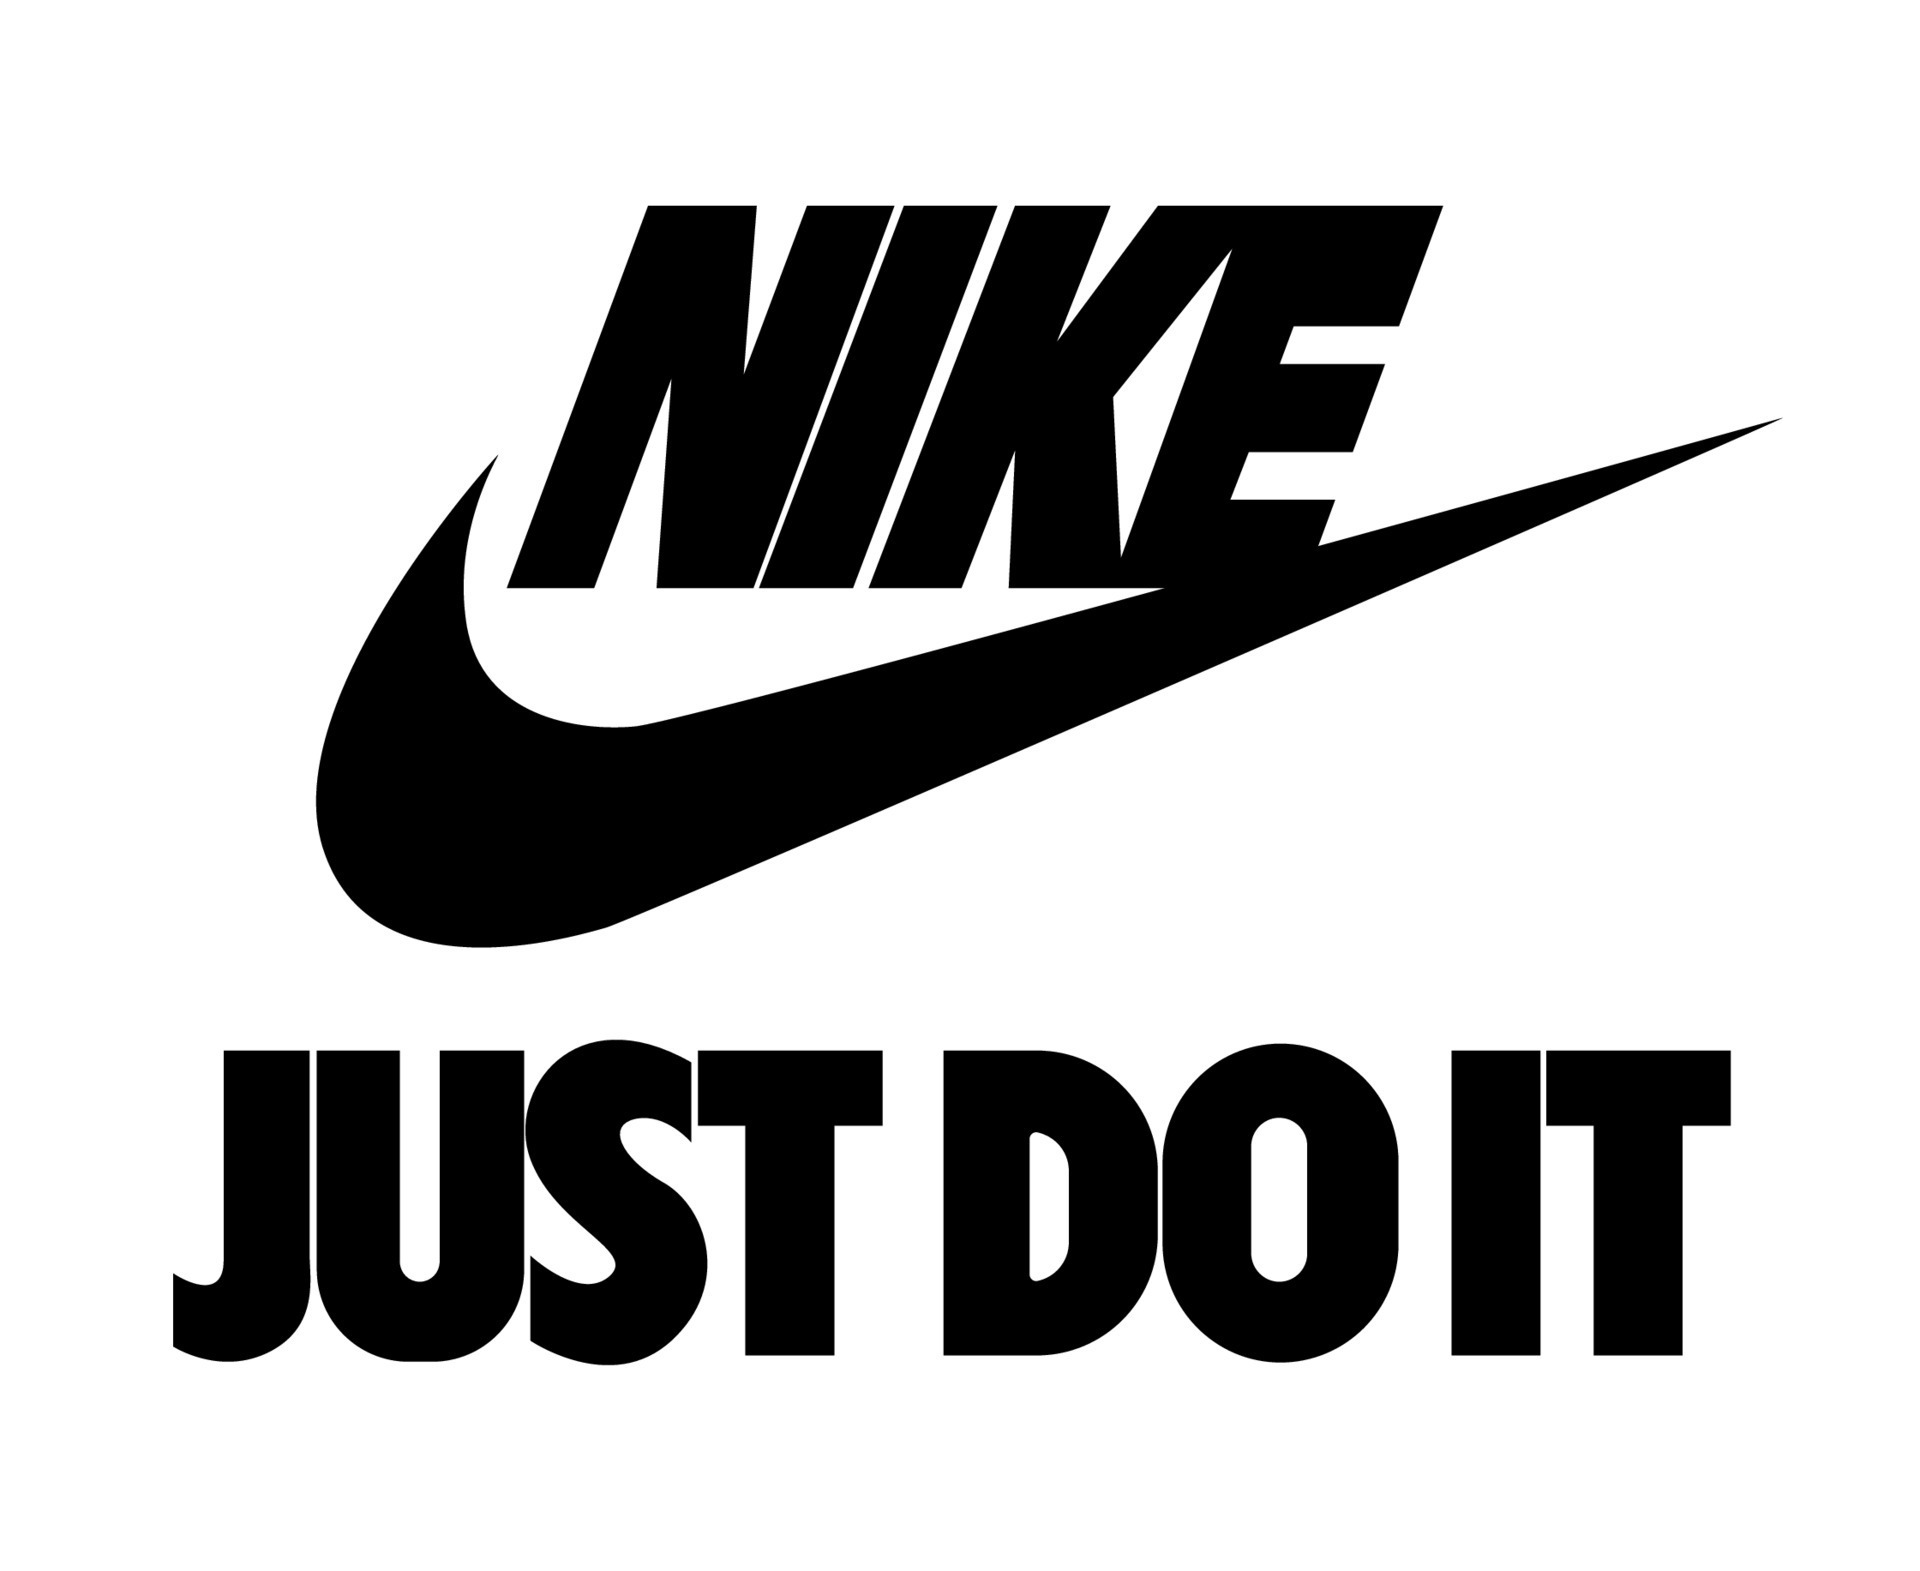 Nike Logo And Just Do It Symbol Black With Name Clothes Design là sự kết hợp hoàn hảo giữa biểu tượng Nike Just Do It truyền thống và thiết kế áo quần đẹp mắt. Sản phẩm này phù hợp với các bạn trẻ yêu thích phong cách thể thao, đồng thời cũng là một lựa chọn thú vị để mặc trong những cuộc họp bạn bè cuối tuần.